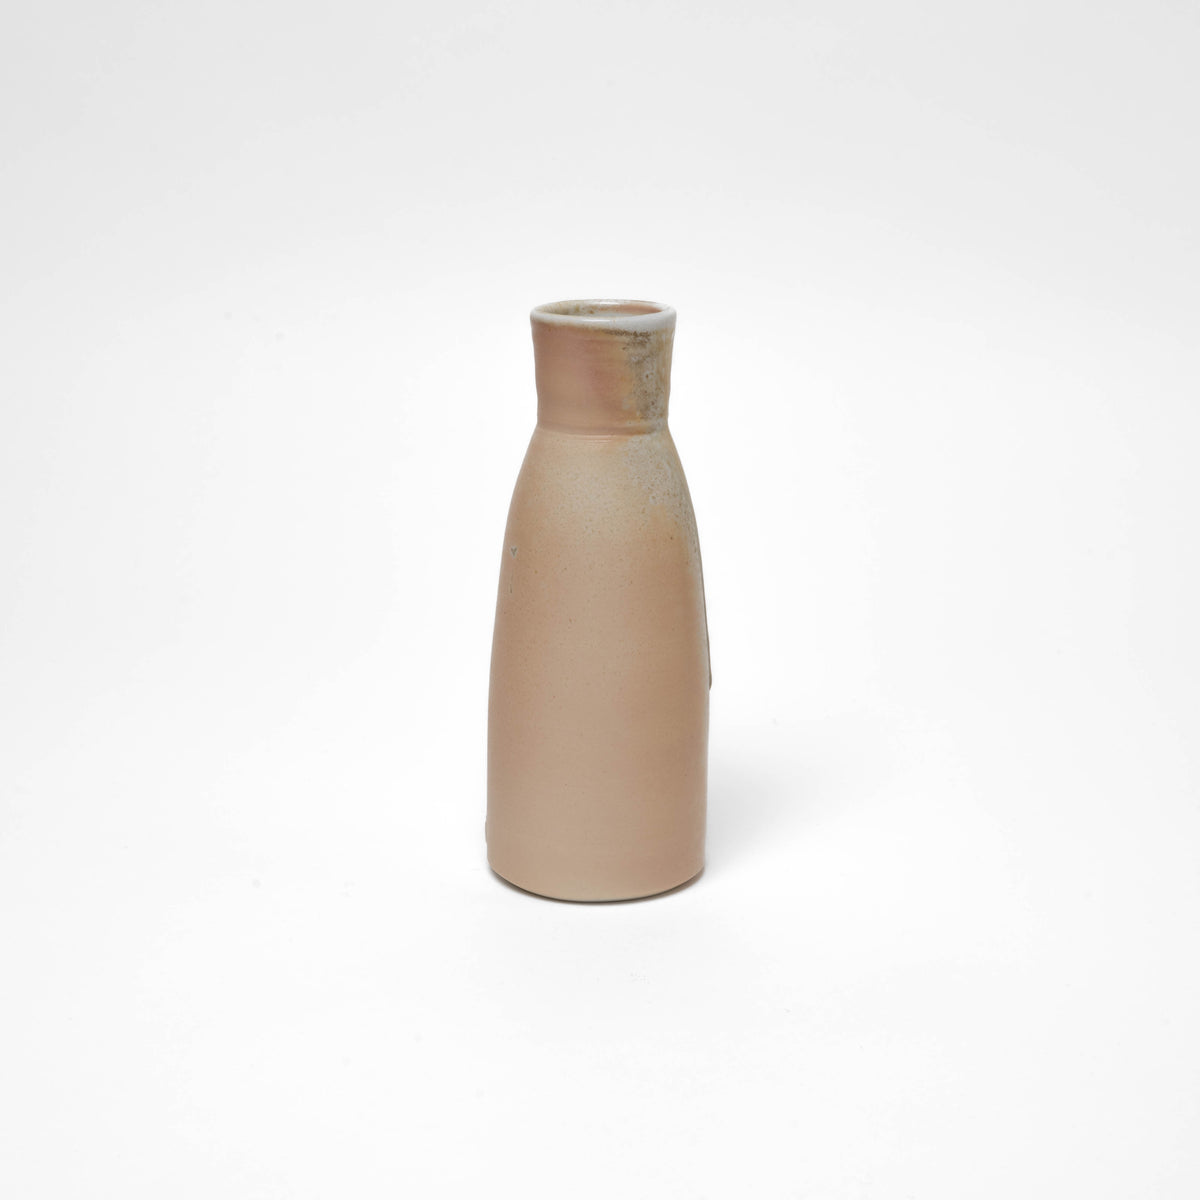 Fine porcelain Sake bottle